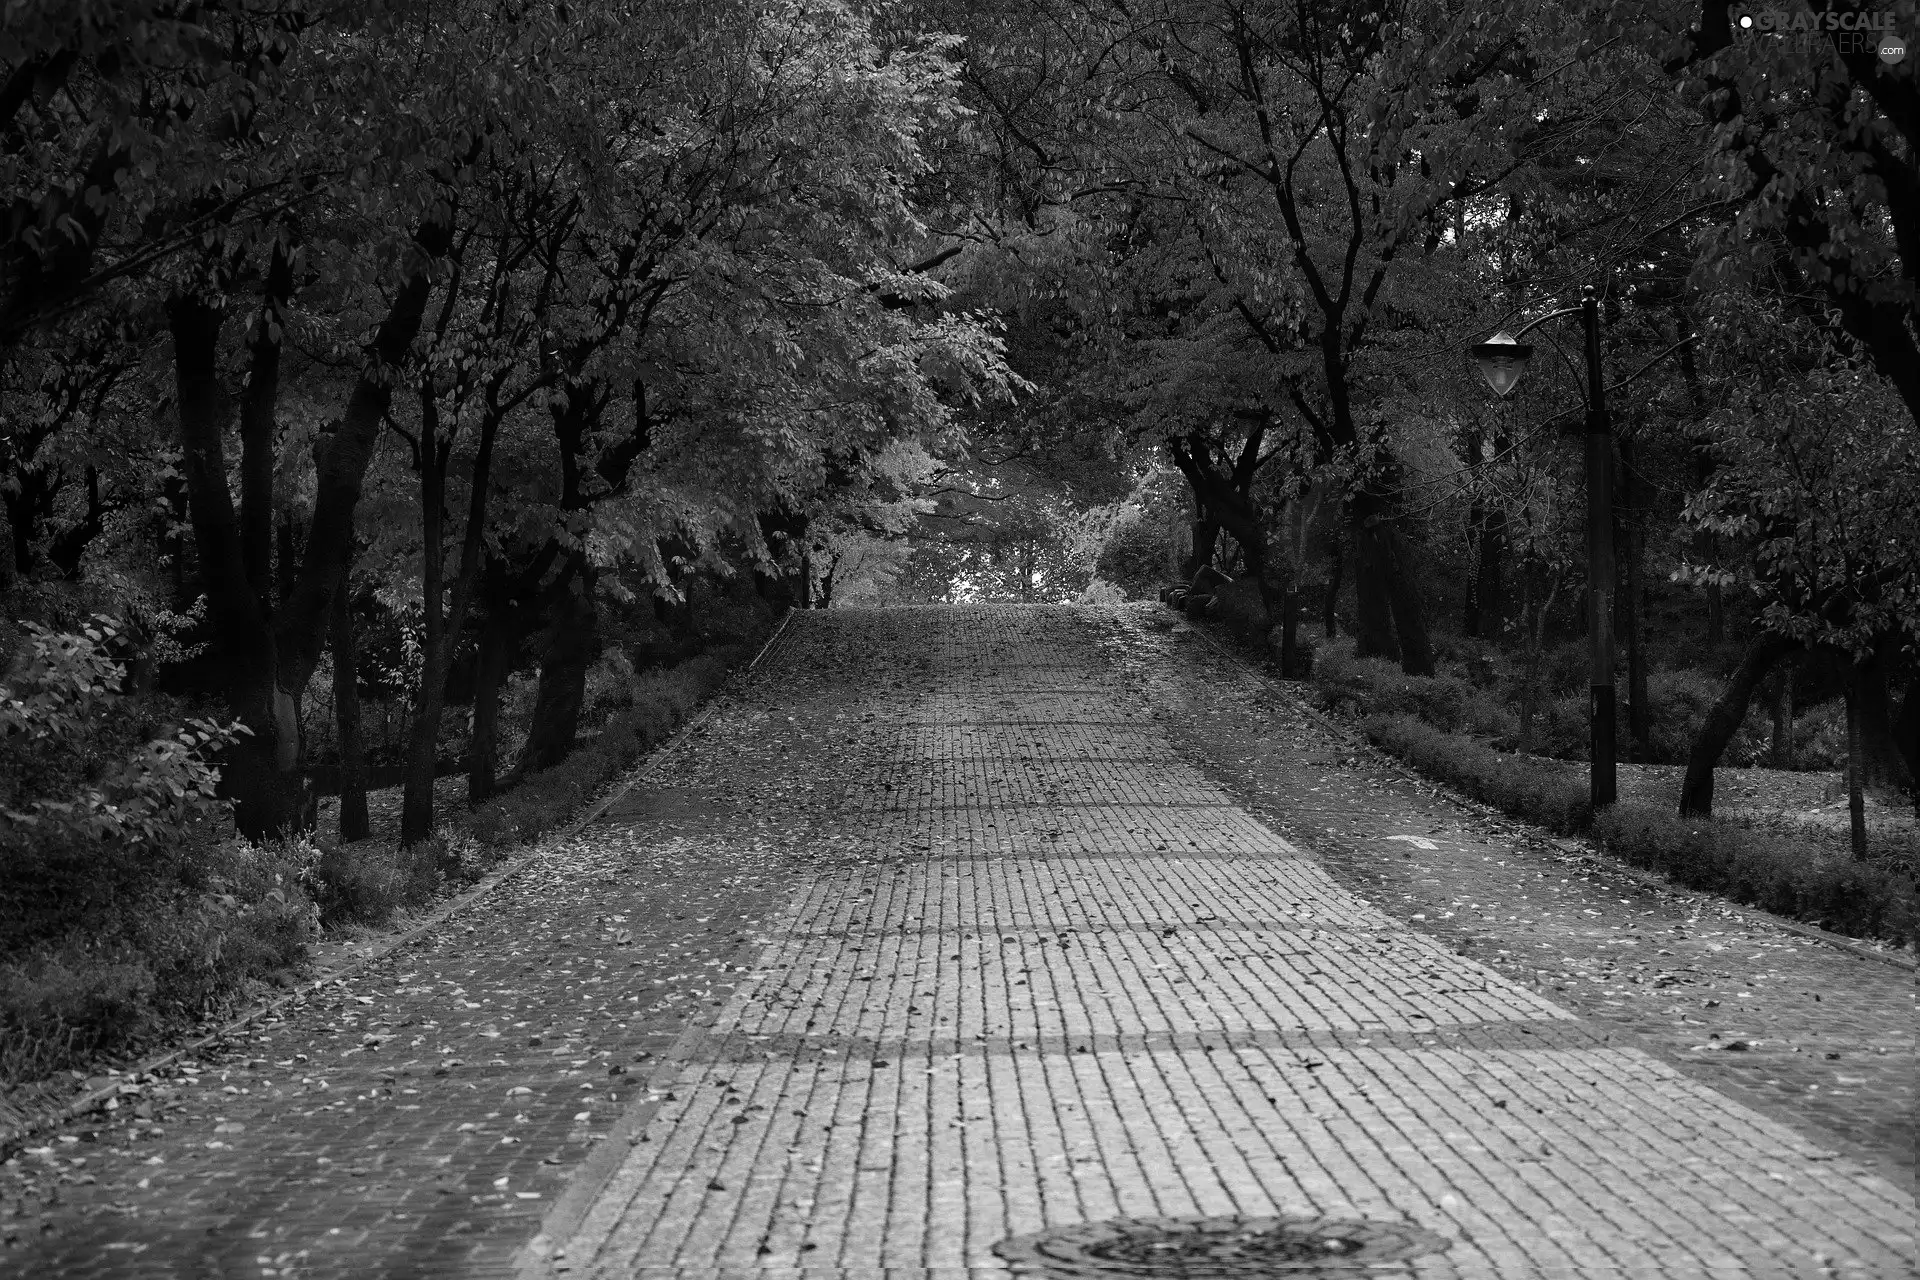 Street, autumn, trees, viewes, Leaf, Park